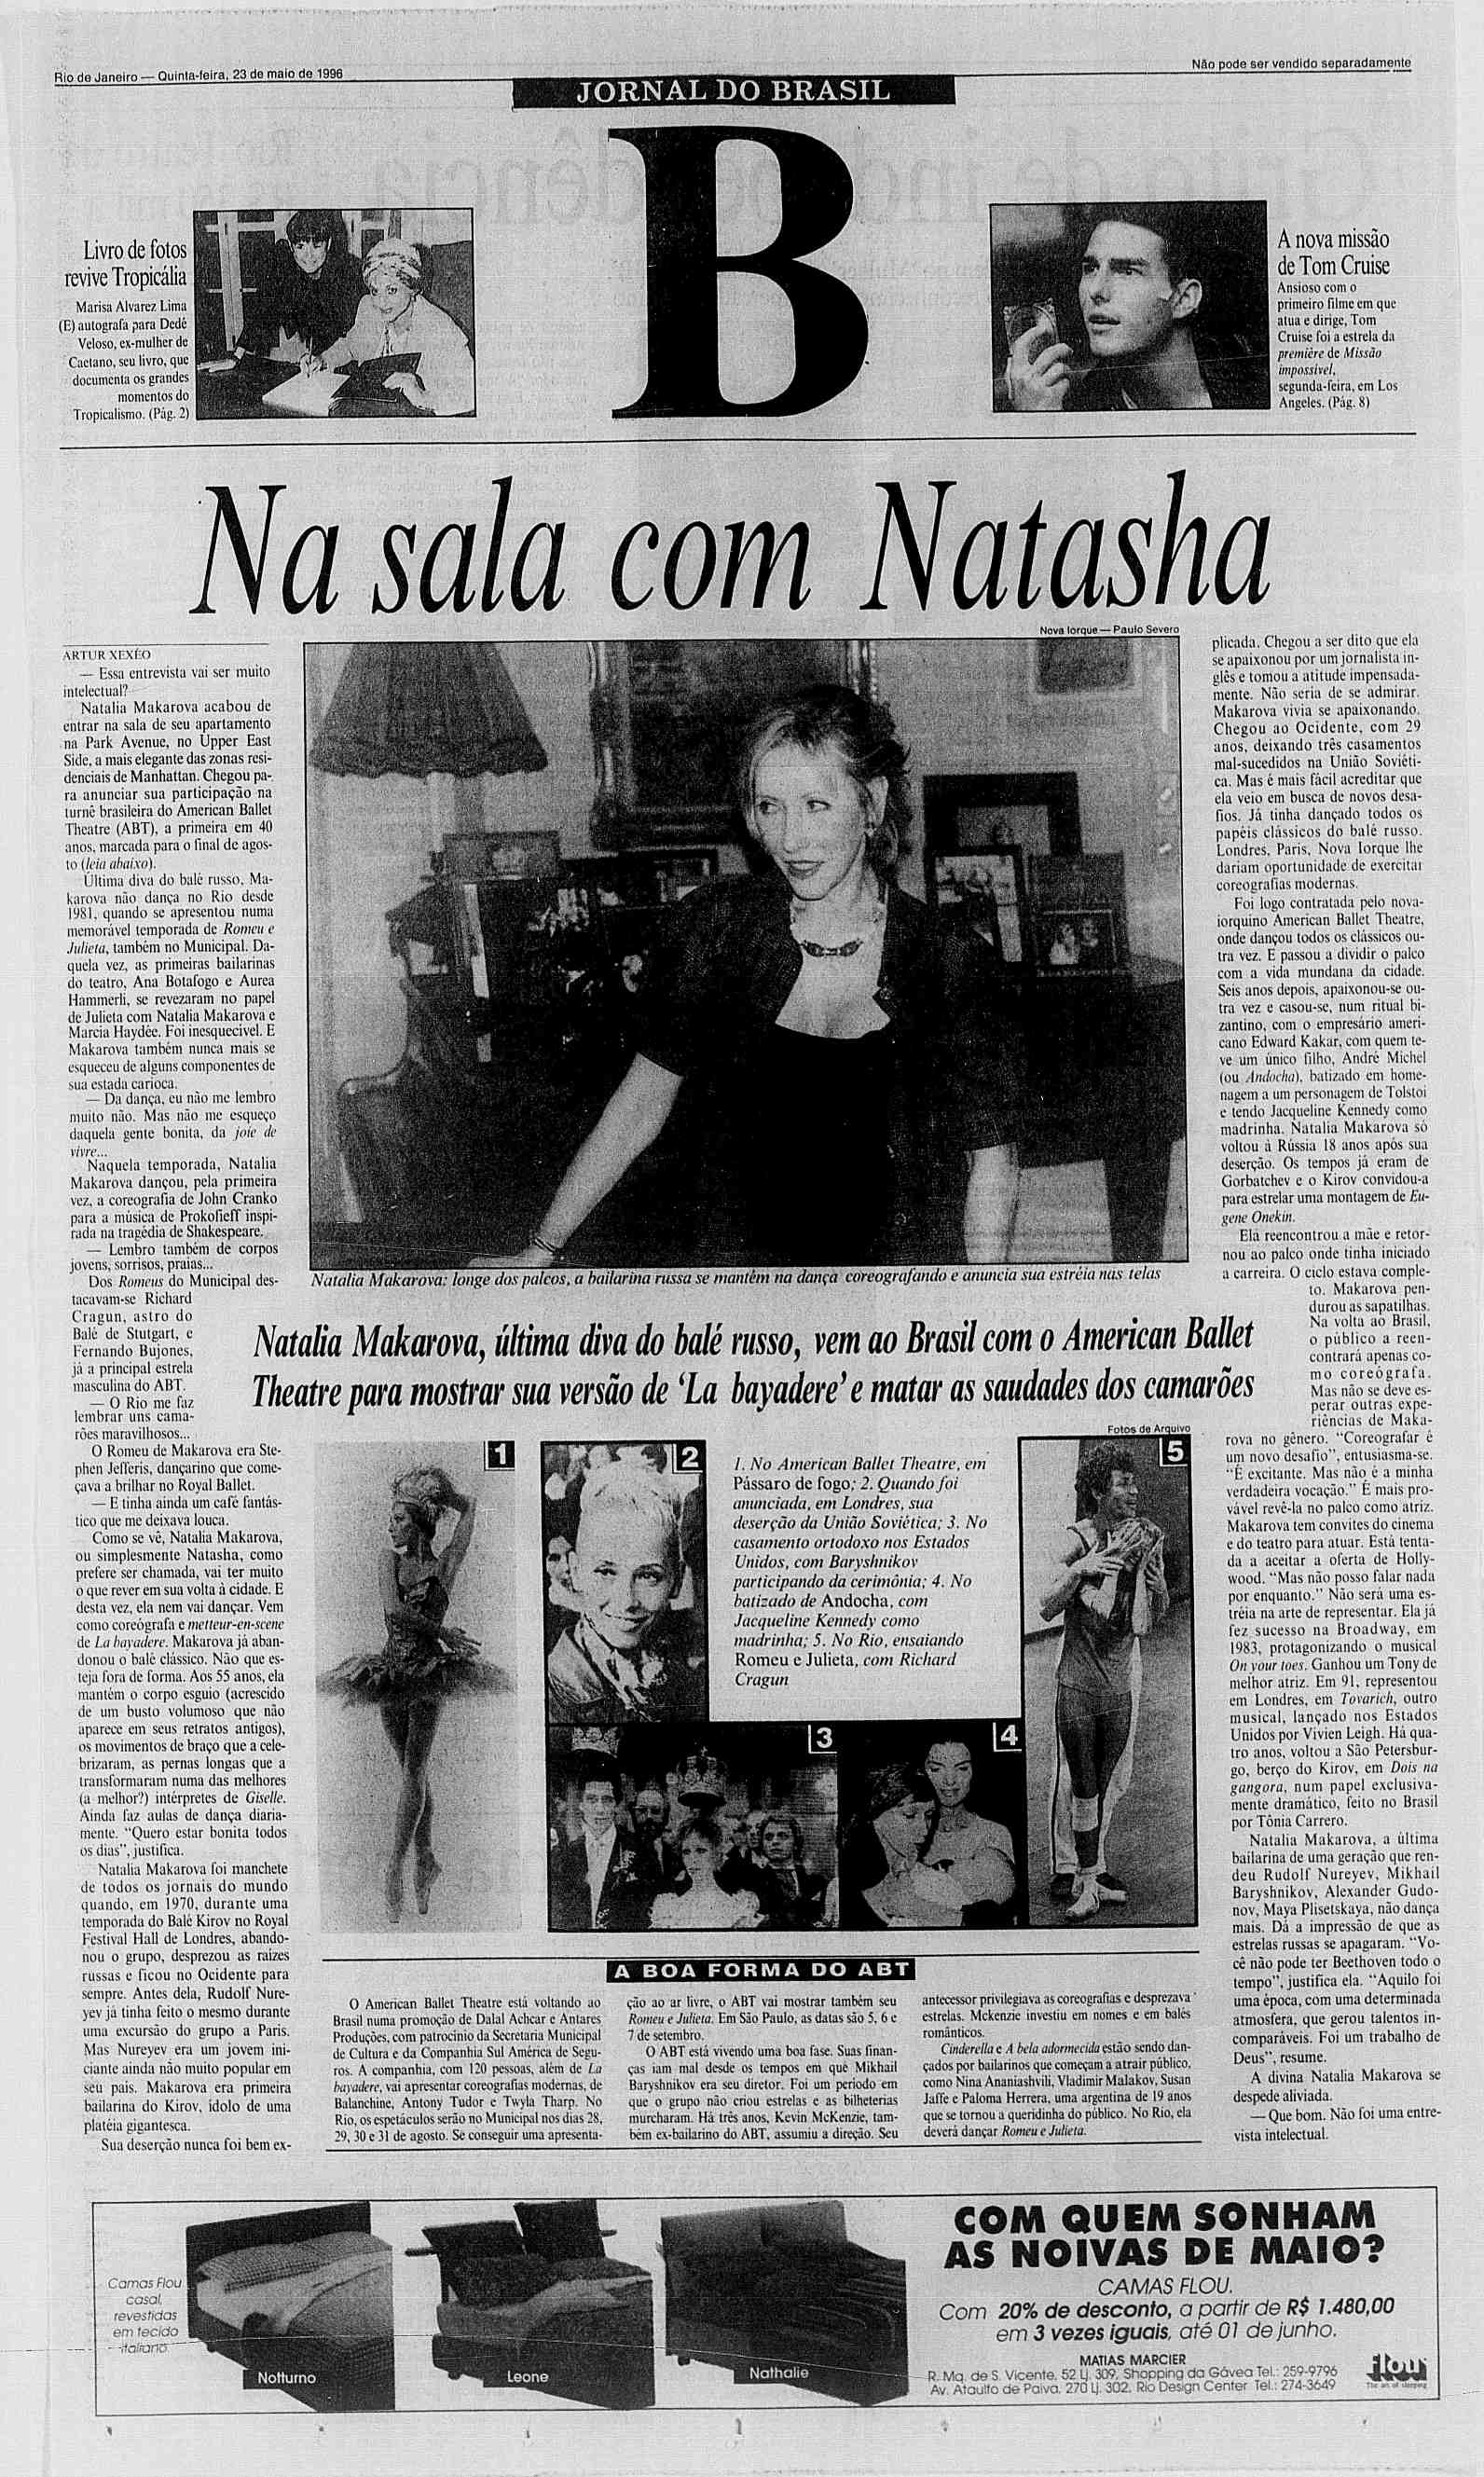 Rio de Janeiro Quinta-leira, Quinta-feira, 23 de maio de 1996 JORNAL DO BRASL N5o N8o pode ser vendido vendldo separadamente Livro de fotos revive Tropicália Marisa Alvarez Lima (E) autografa para